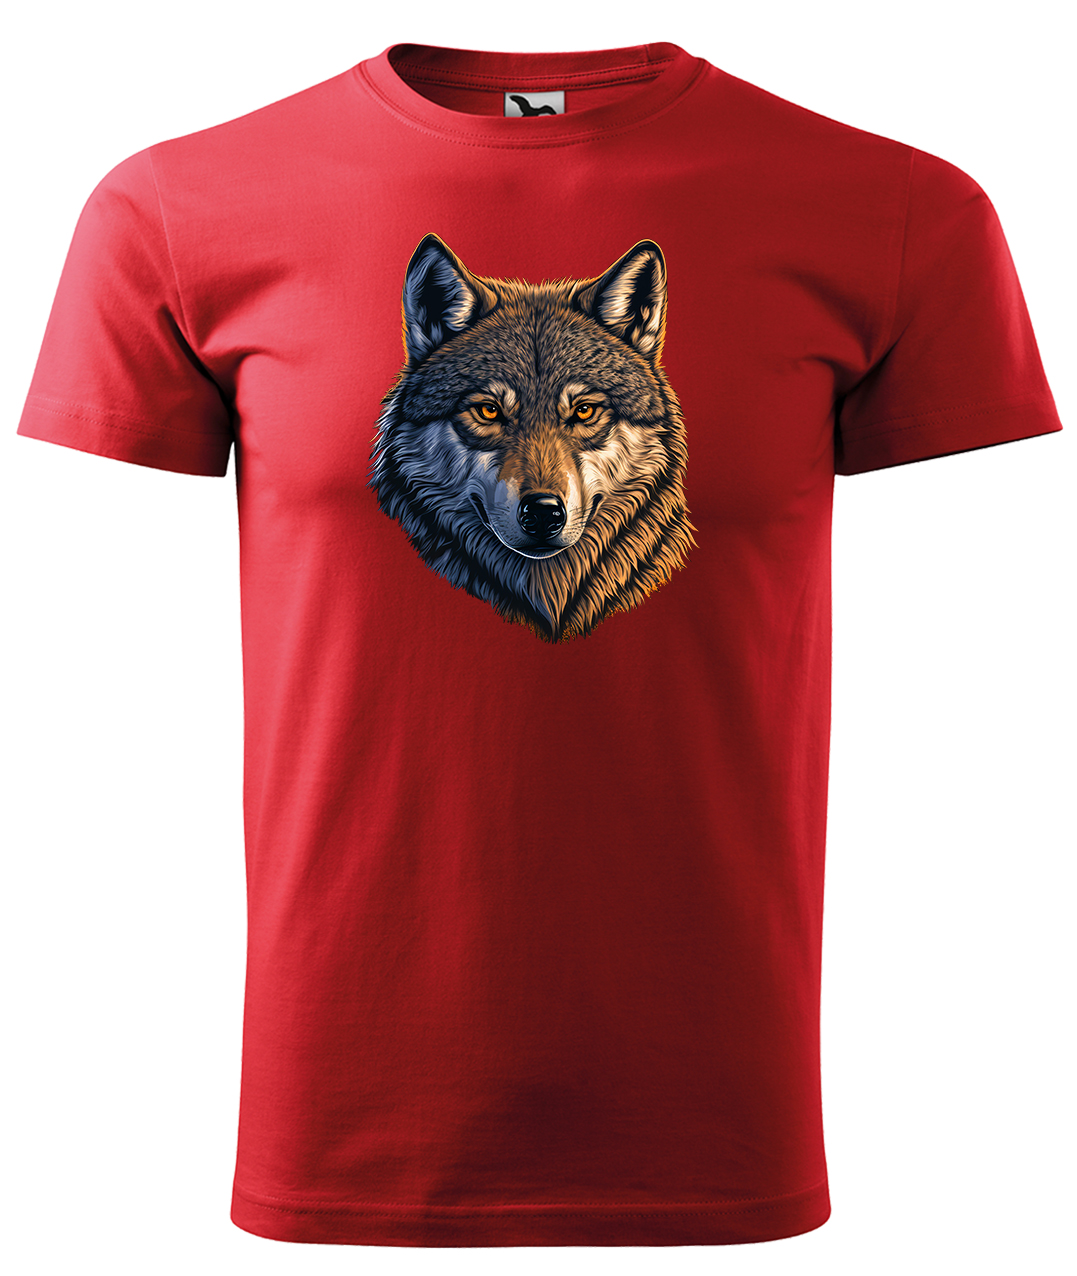 Dětské tričko s vlkem - Hlava vlka Velikost: 12 let / 158 cm, Barva: Červená (07), Délka rukávu: Krátký rukáv